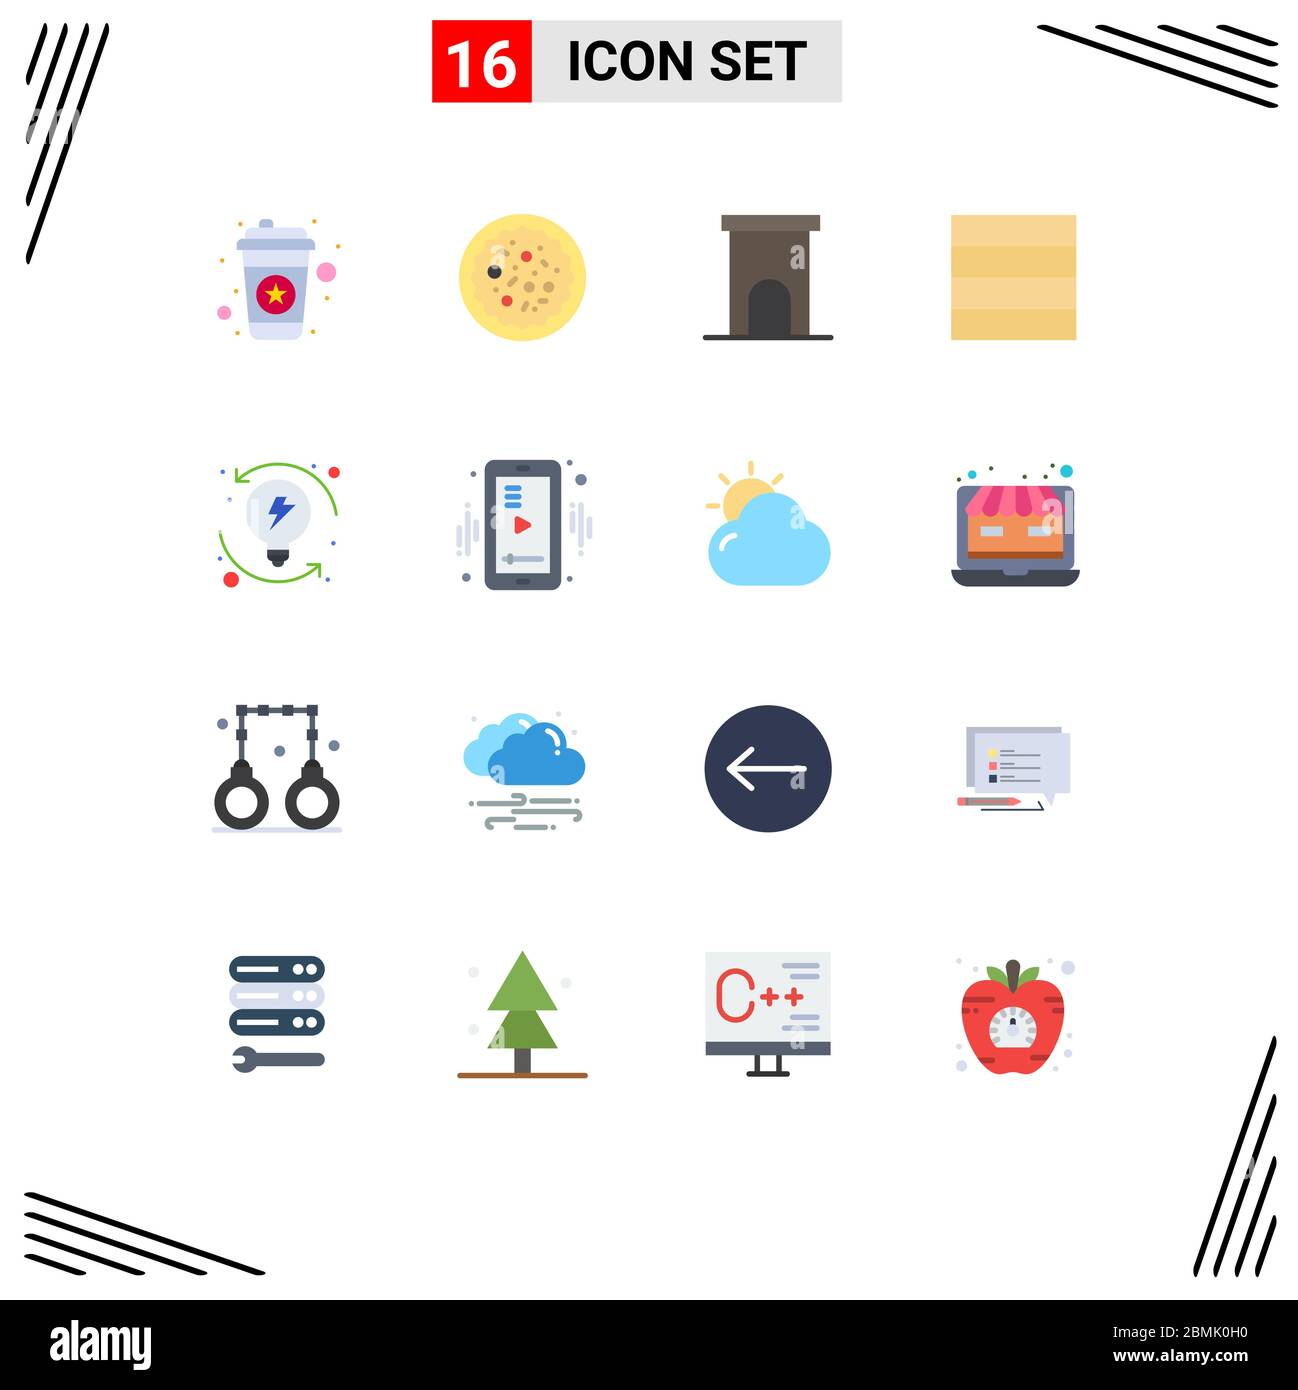 16 interfaccia utente Flat Color Pack di segni moderni e simboli di progressione, sviluppo, architettura, wireframe, residence Editable Pack di Creativ Illustrazione Vettoriale